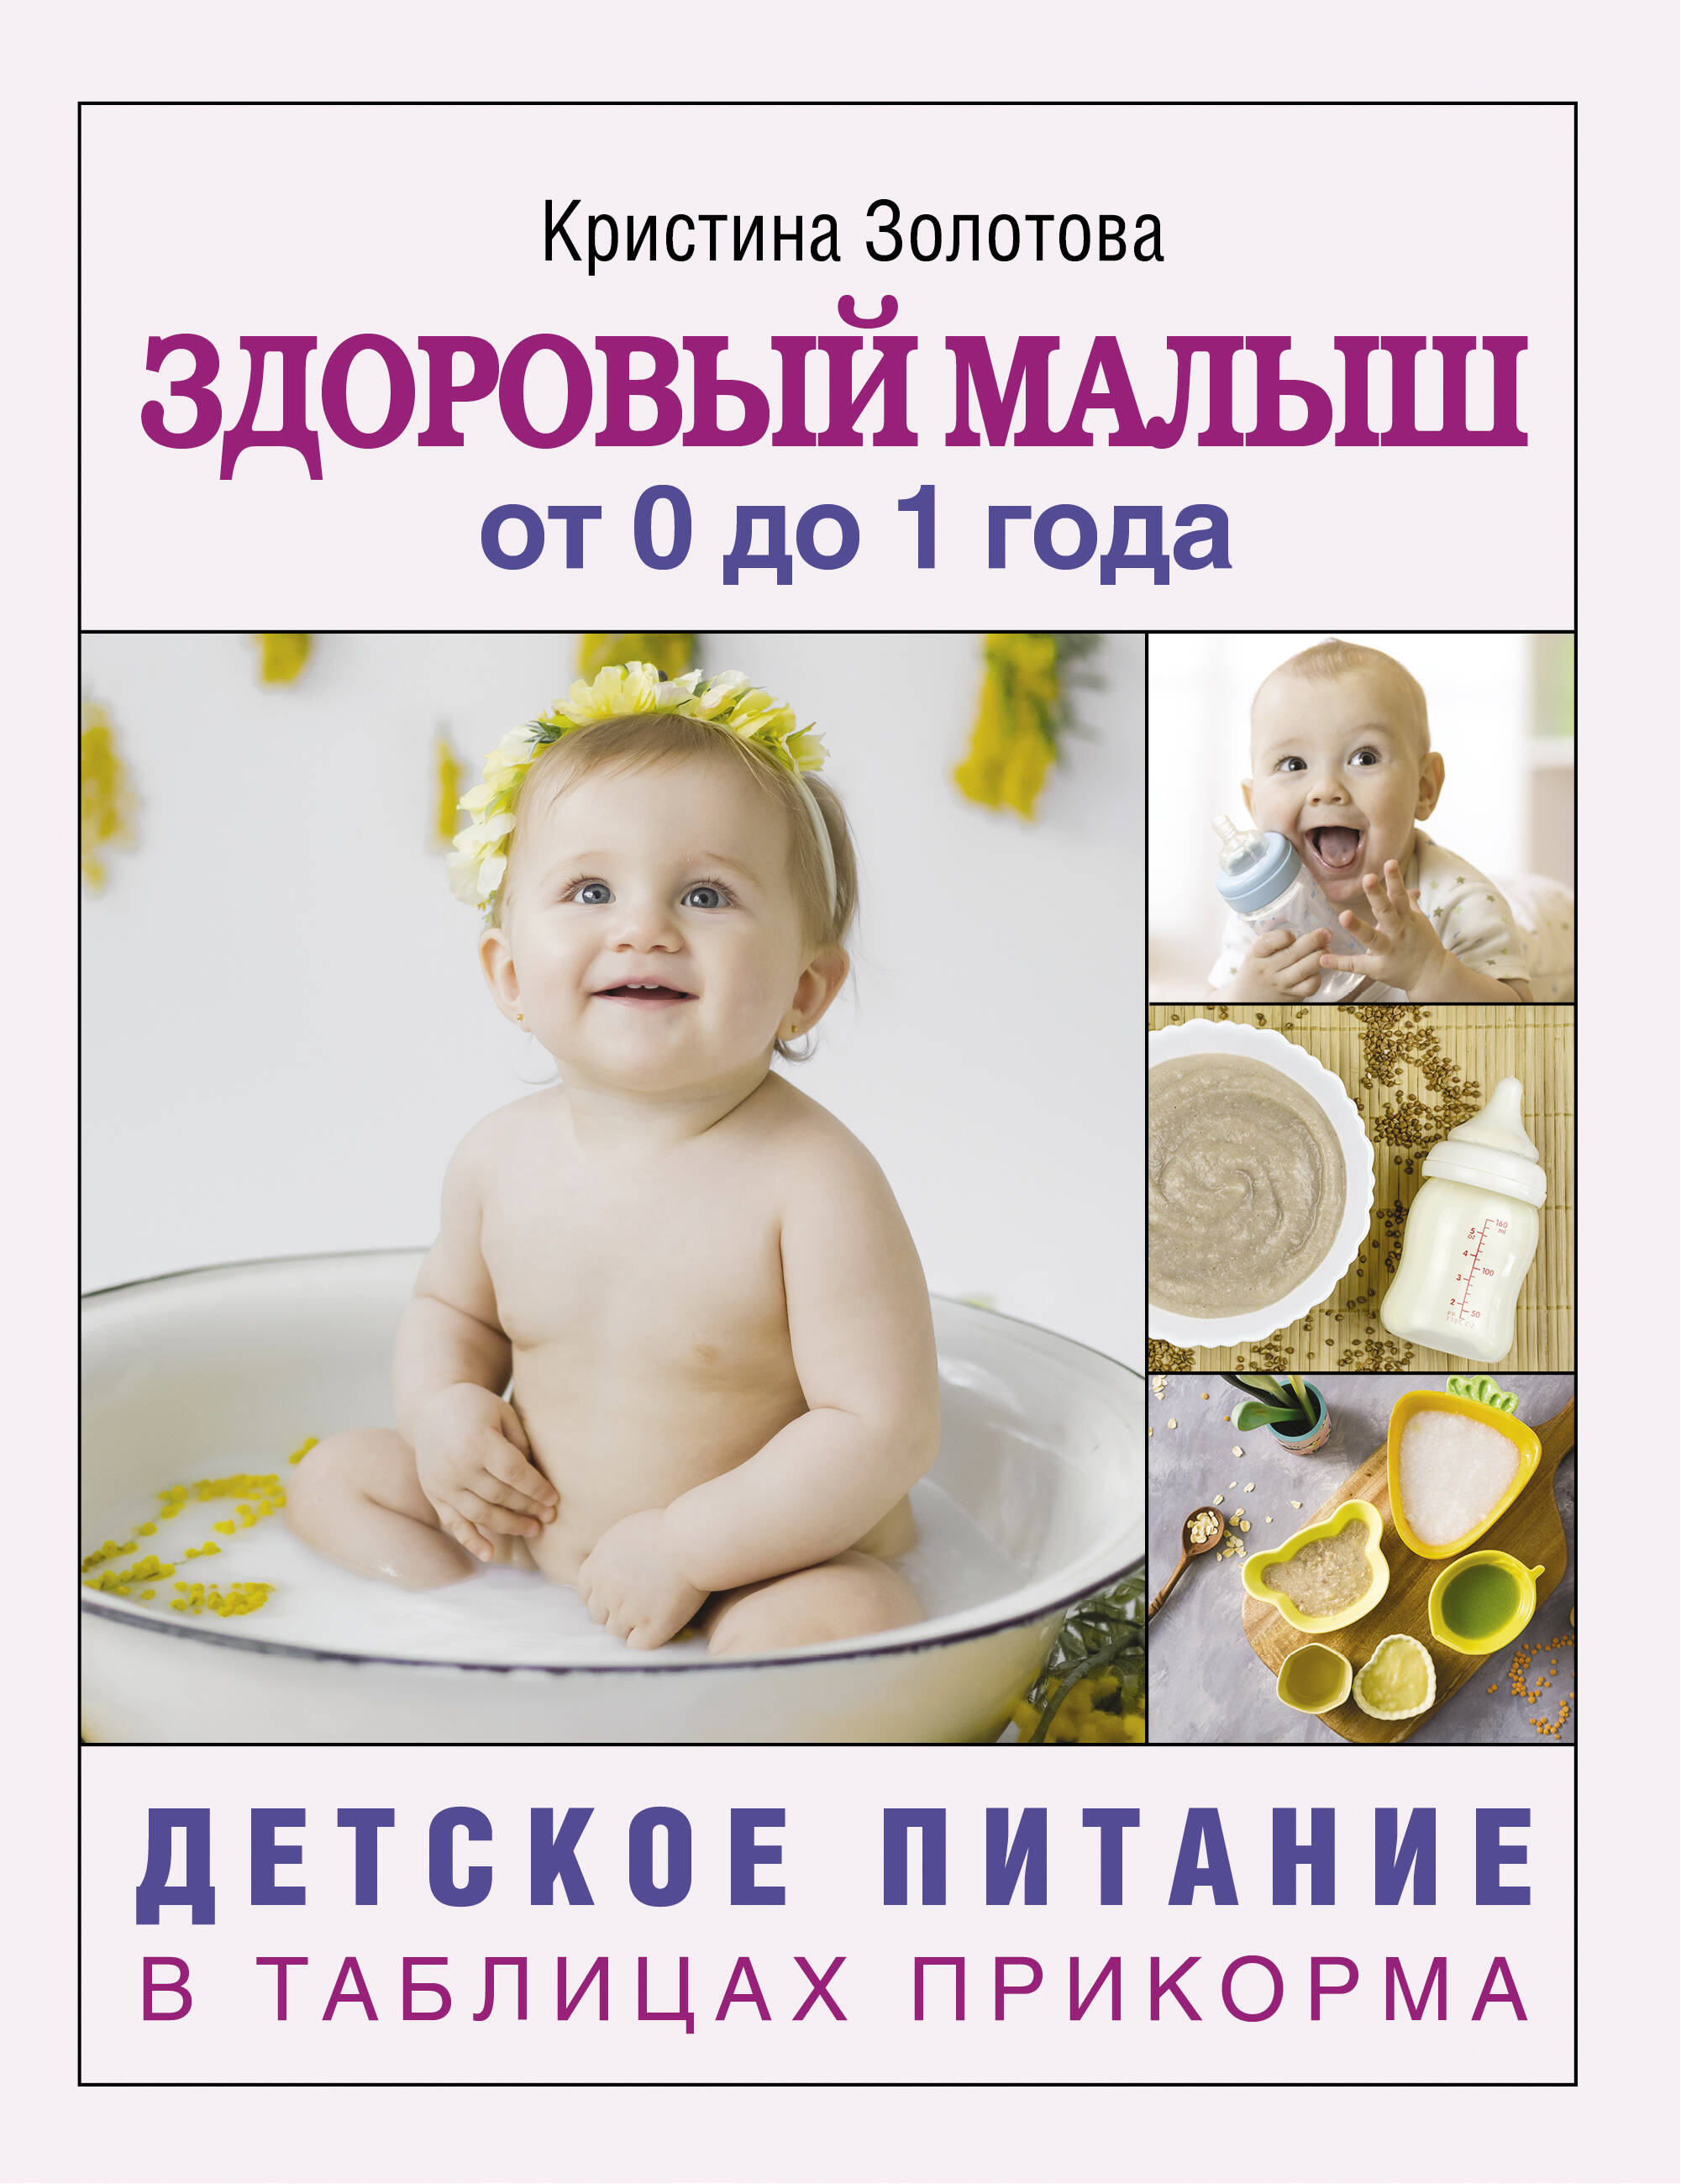 Золотова Кристина Игоревна Здоровый малыш от 0 до 1 года. Детское питание в таблицах прикорма. - страница 0